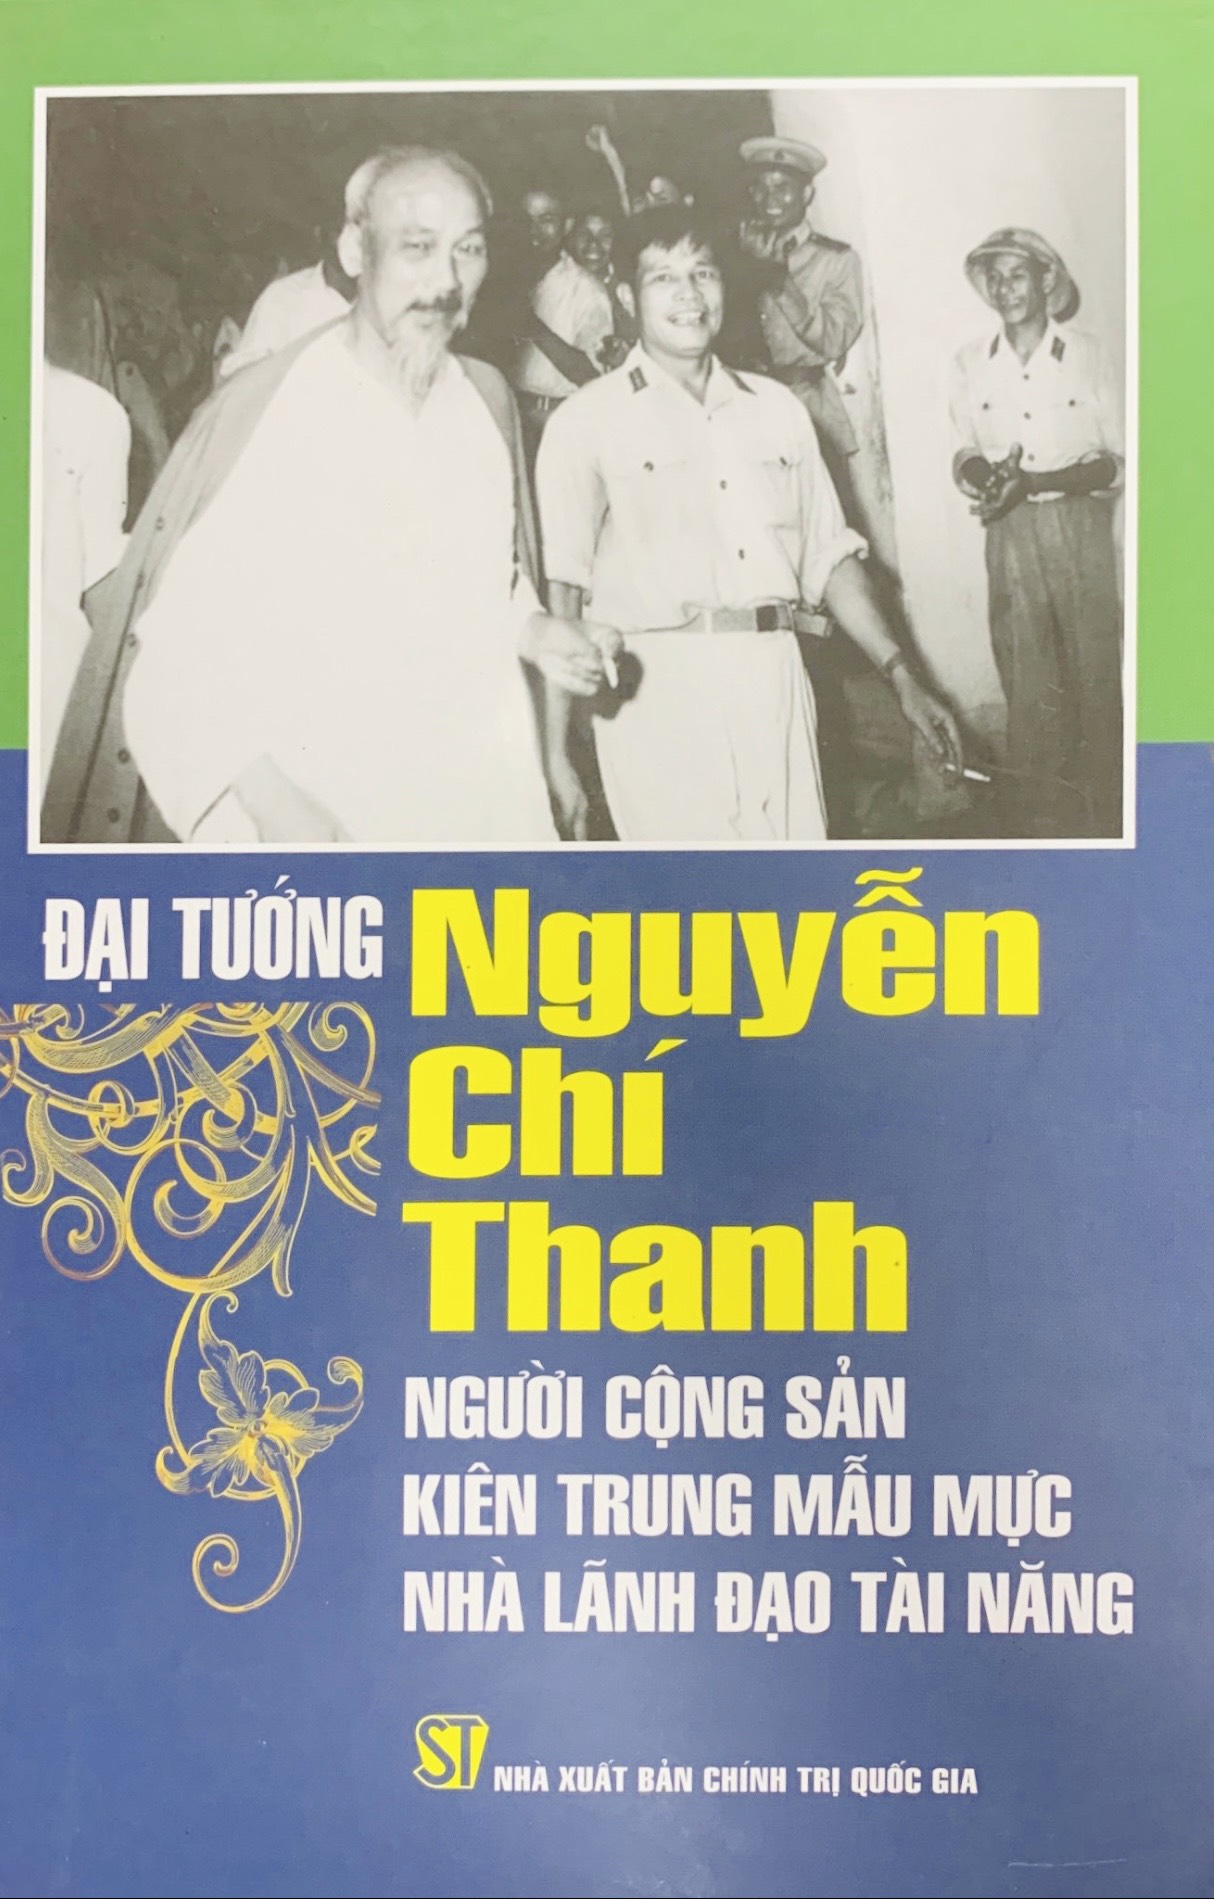 Đại tướng Nguyễn Chí Thanh: Người cộng sản kiên trung mẫu mực, nhà lãnh đạo tài năng (xuất bản 2013)